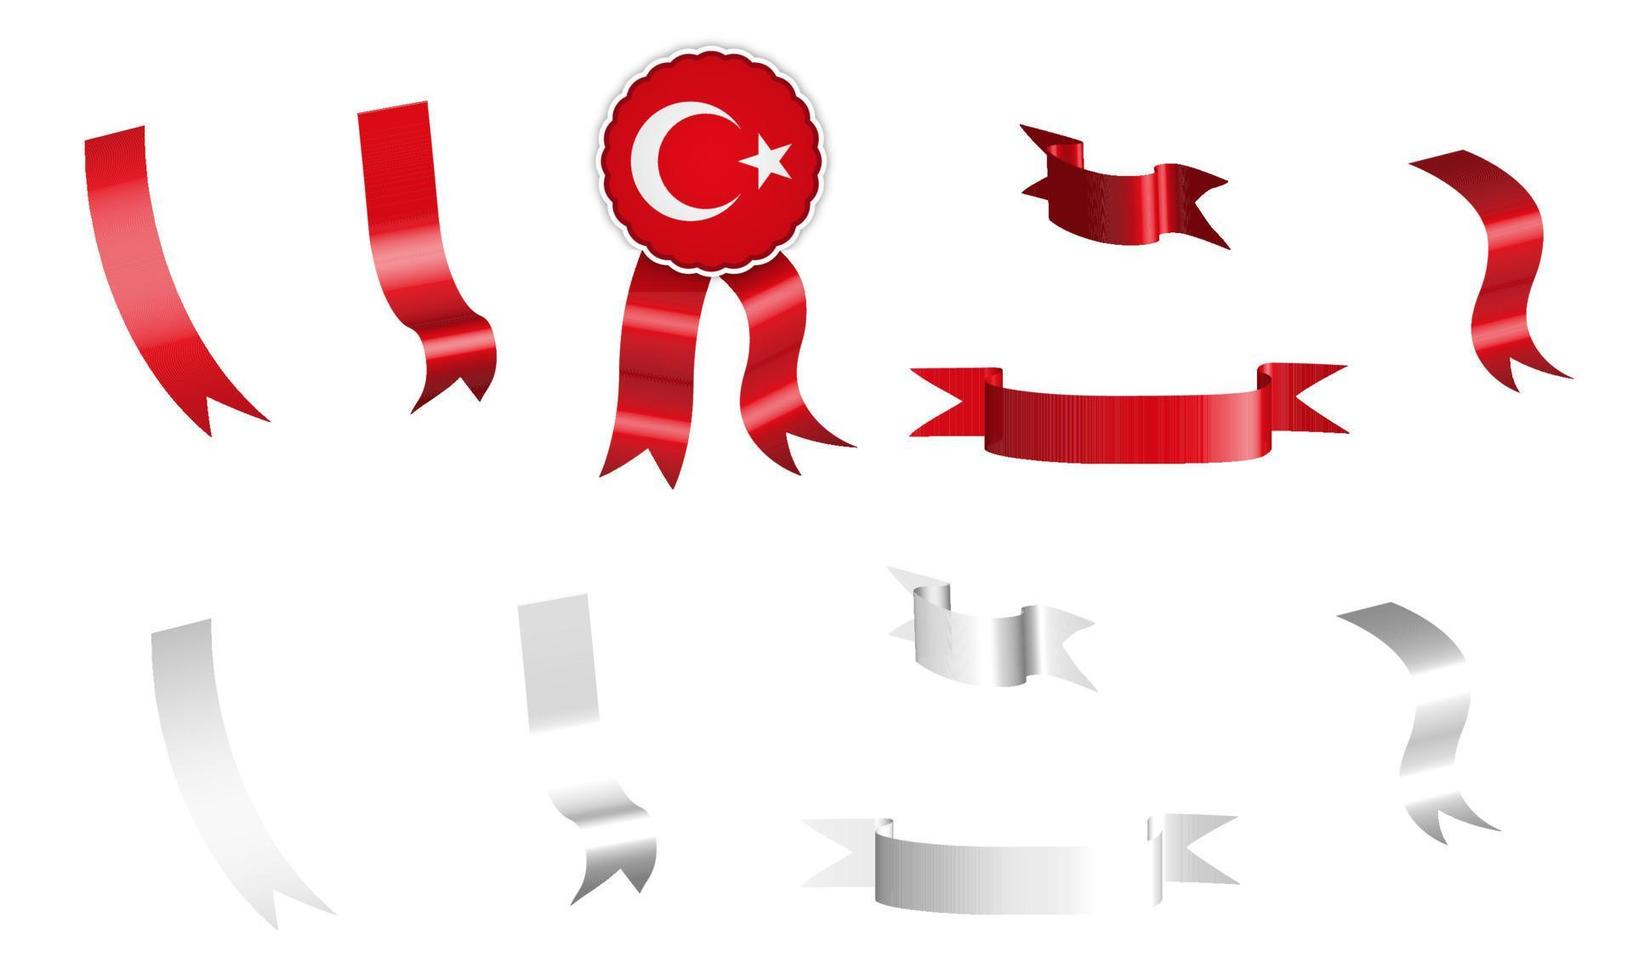 étiquette, ensemble de rubans blancs et rouges avec étiquette, aux couleurs du drapeau de la république de turquie. vecteur isolé sur fond blanc